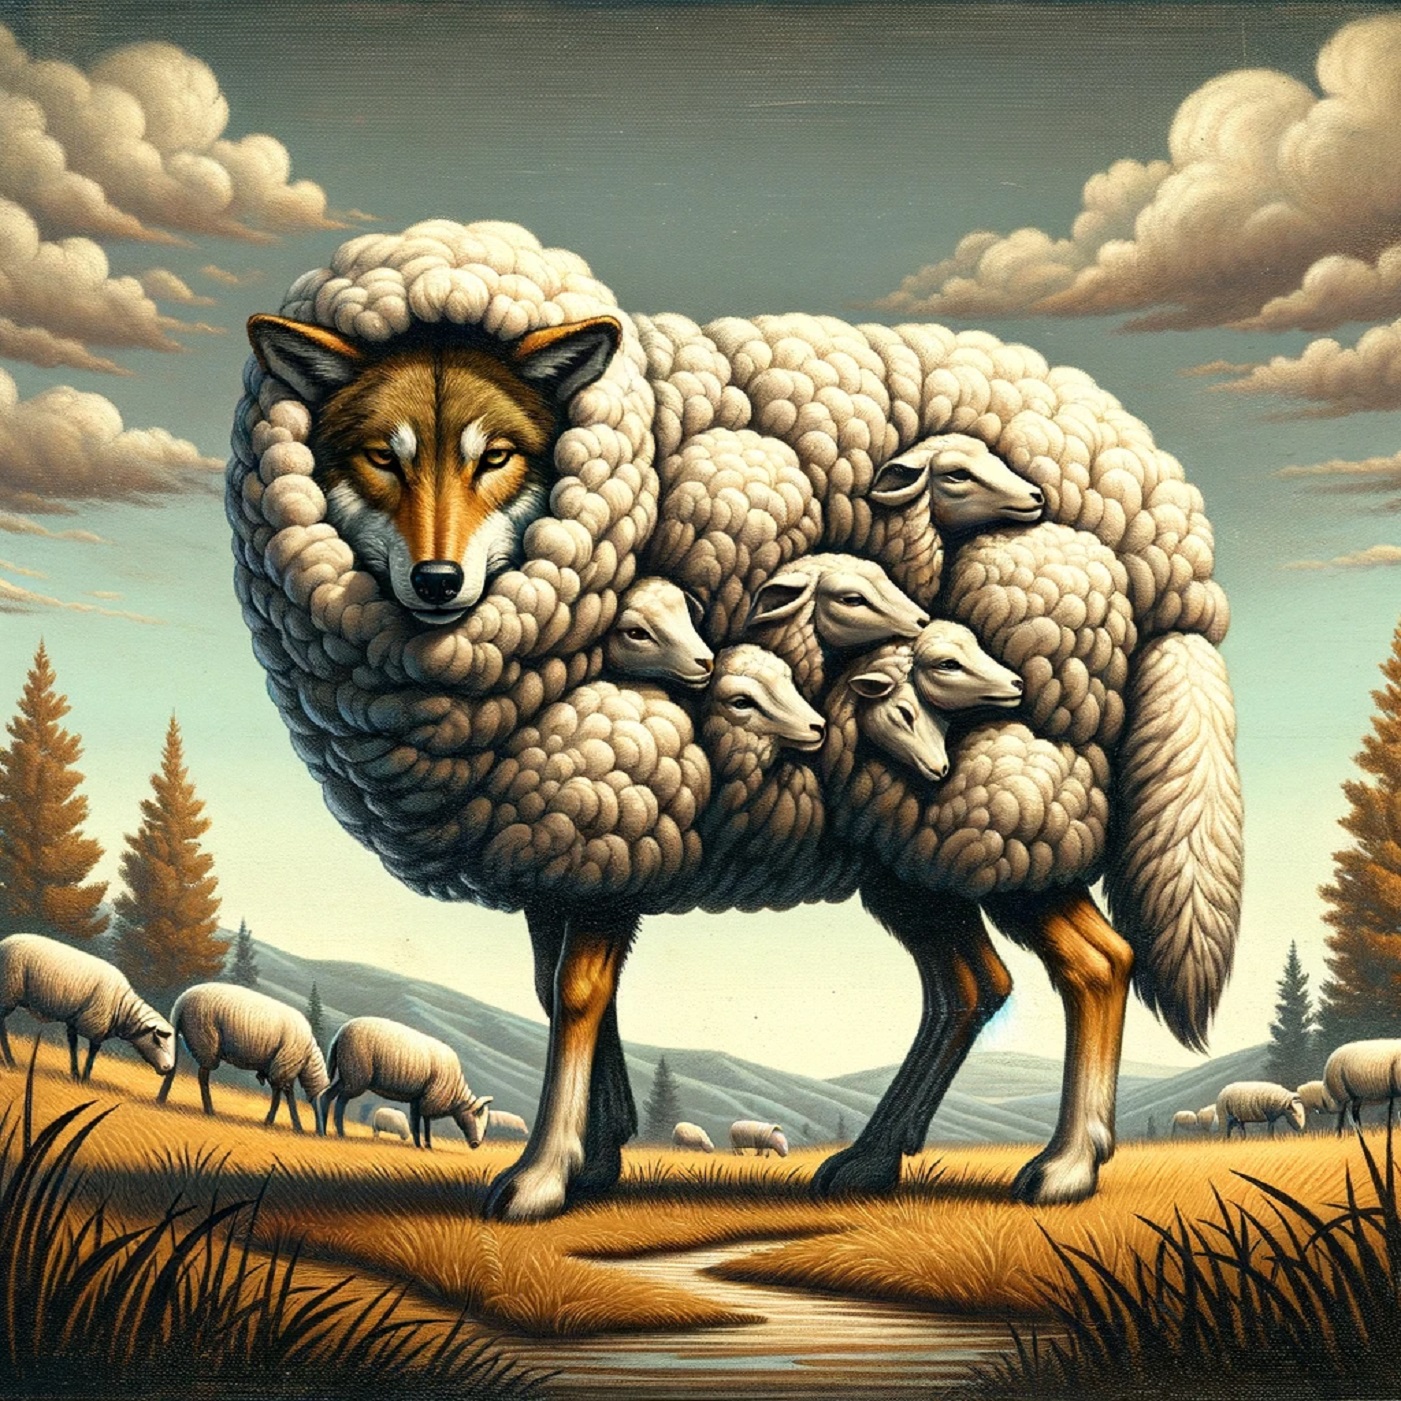 84 – Wölfe im Schafspelz: Die Suche nach Wahrheit in einer Welt voller Täuschung